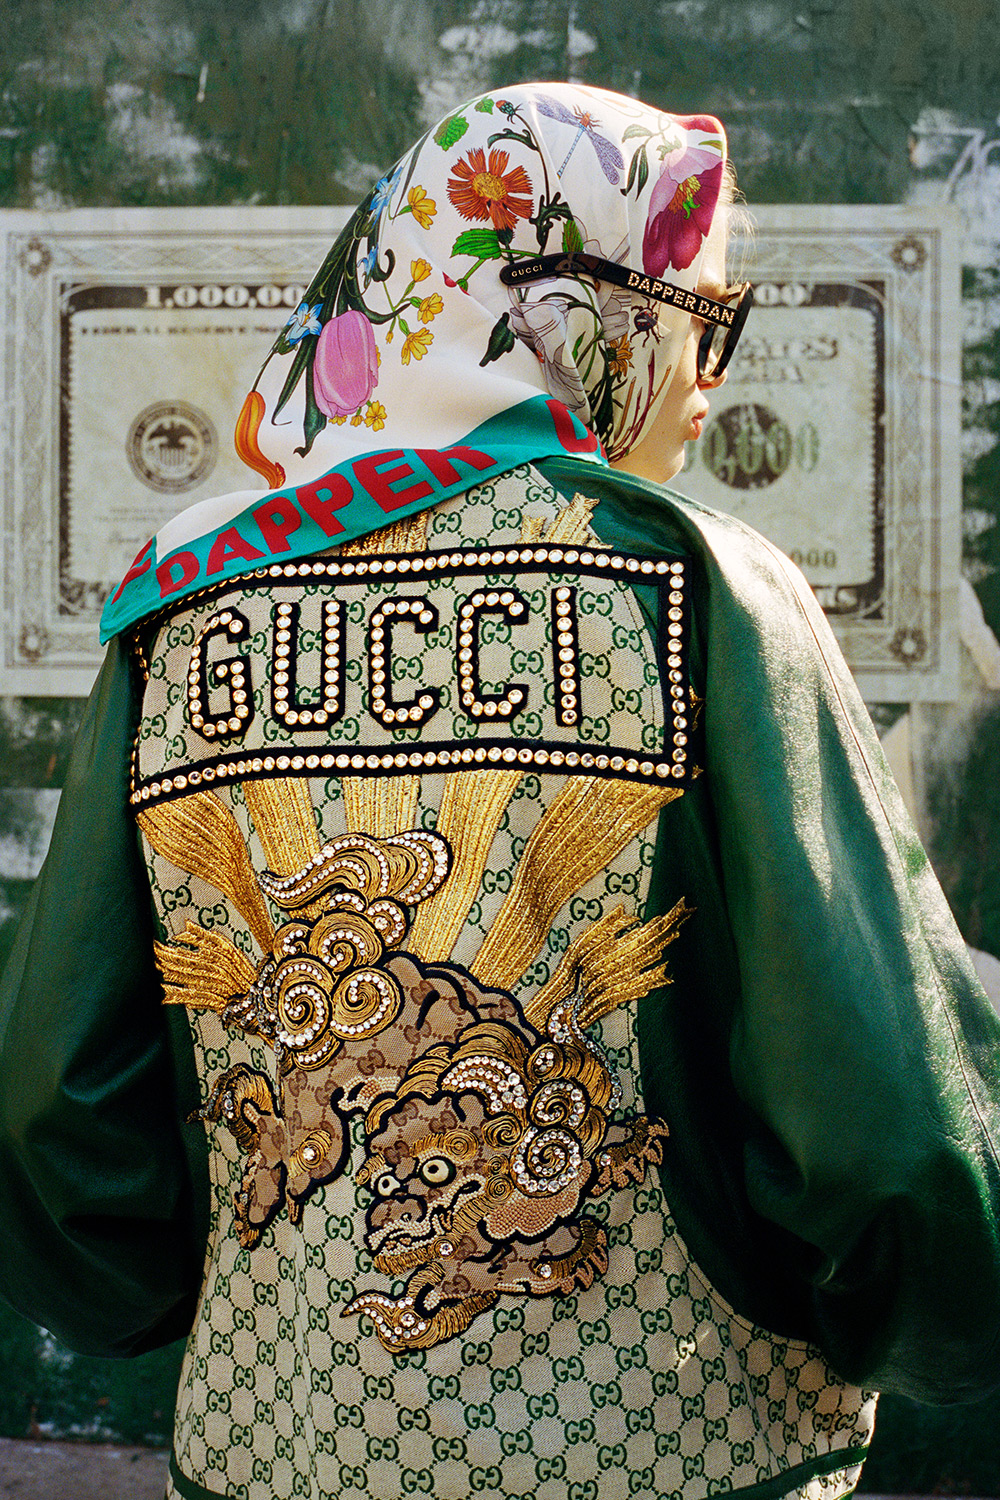 Gucci X Dapper Dan Collection Has Dropped – ColoRising